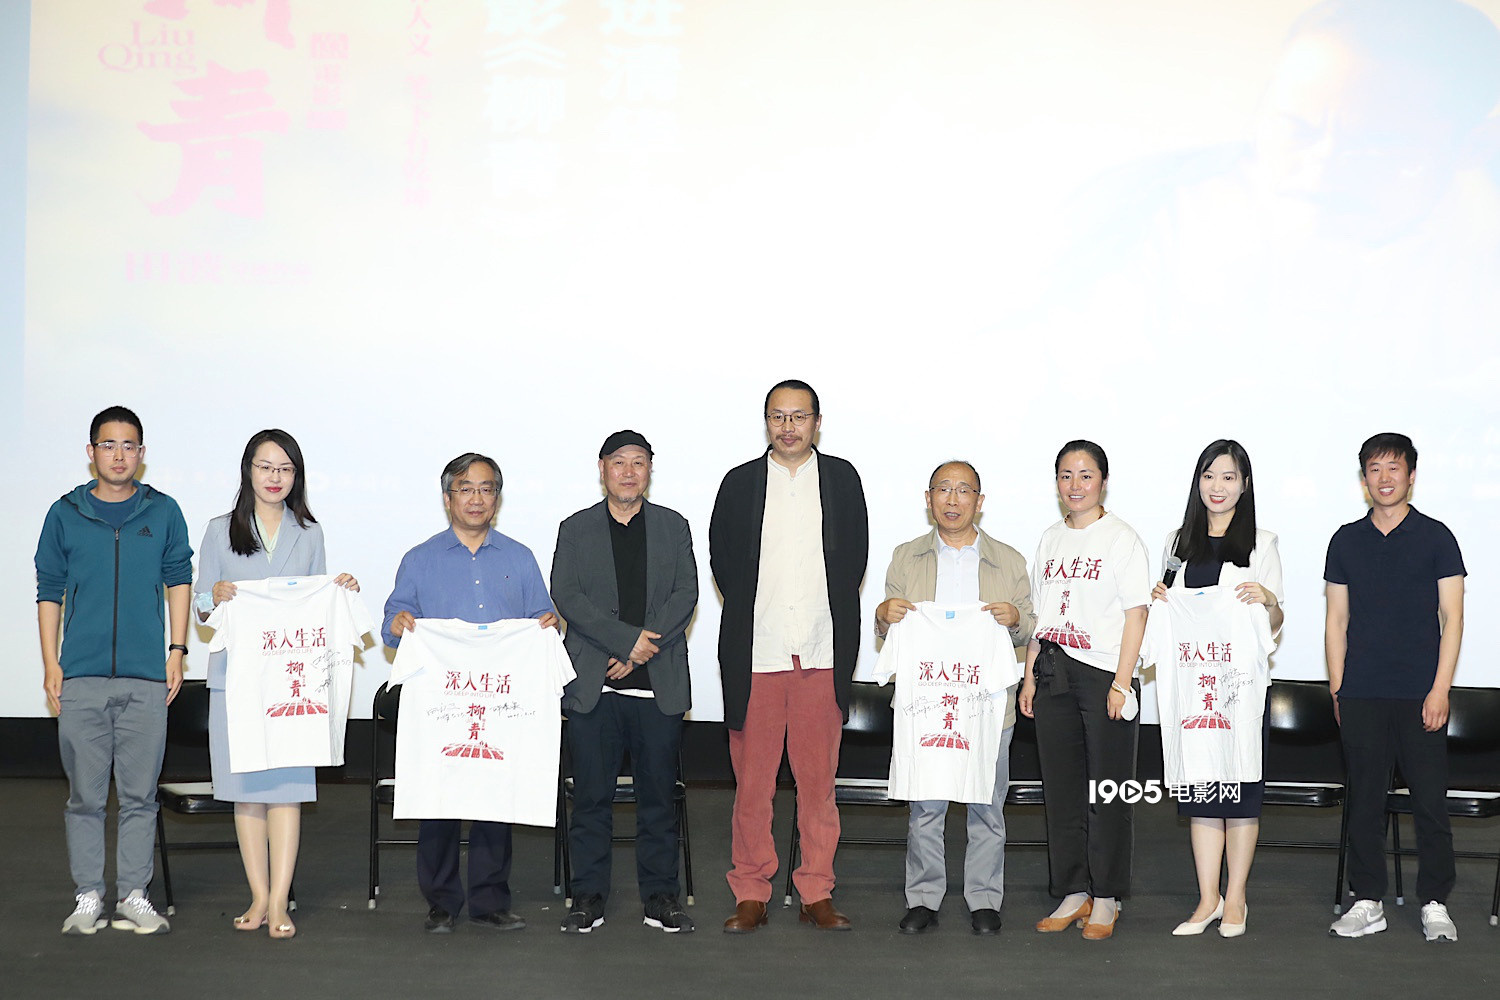 电影《柳青》走进清华 揭幕庆祝建党百年展映活动